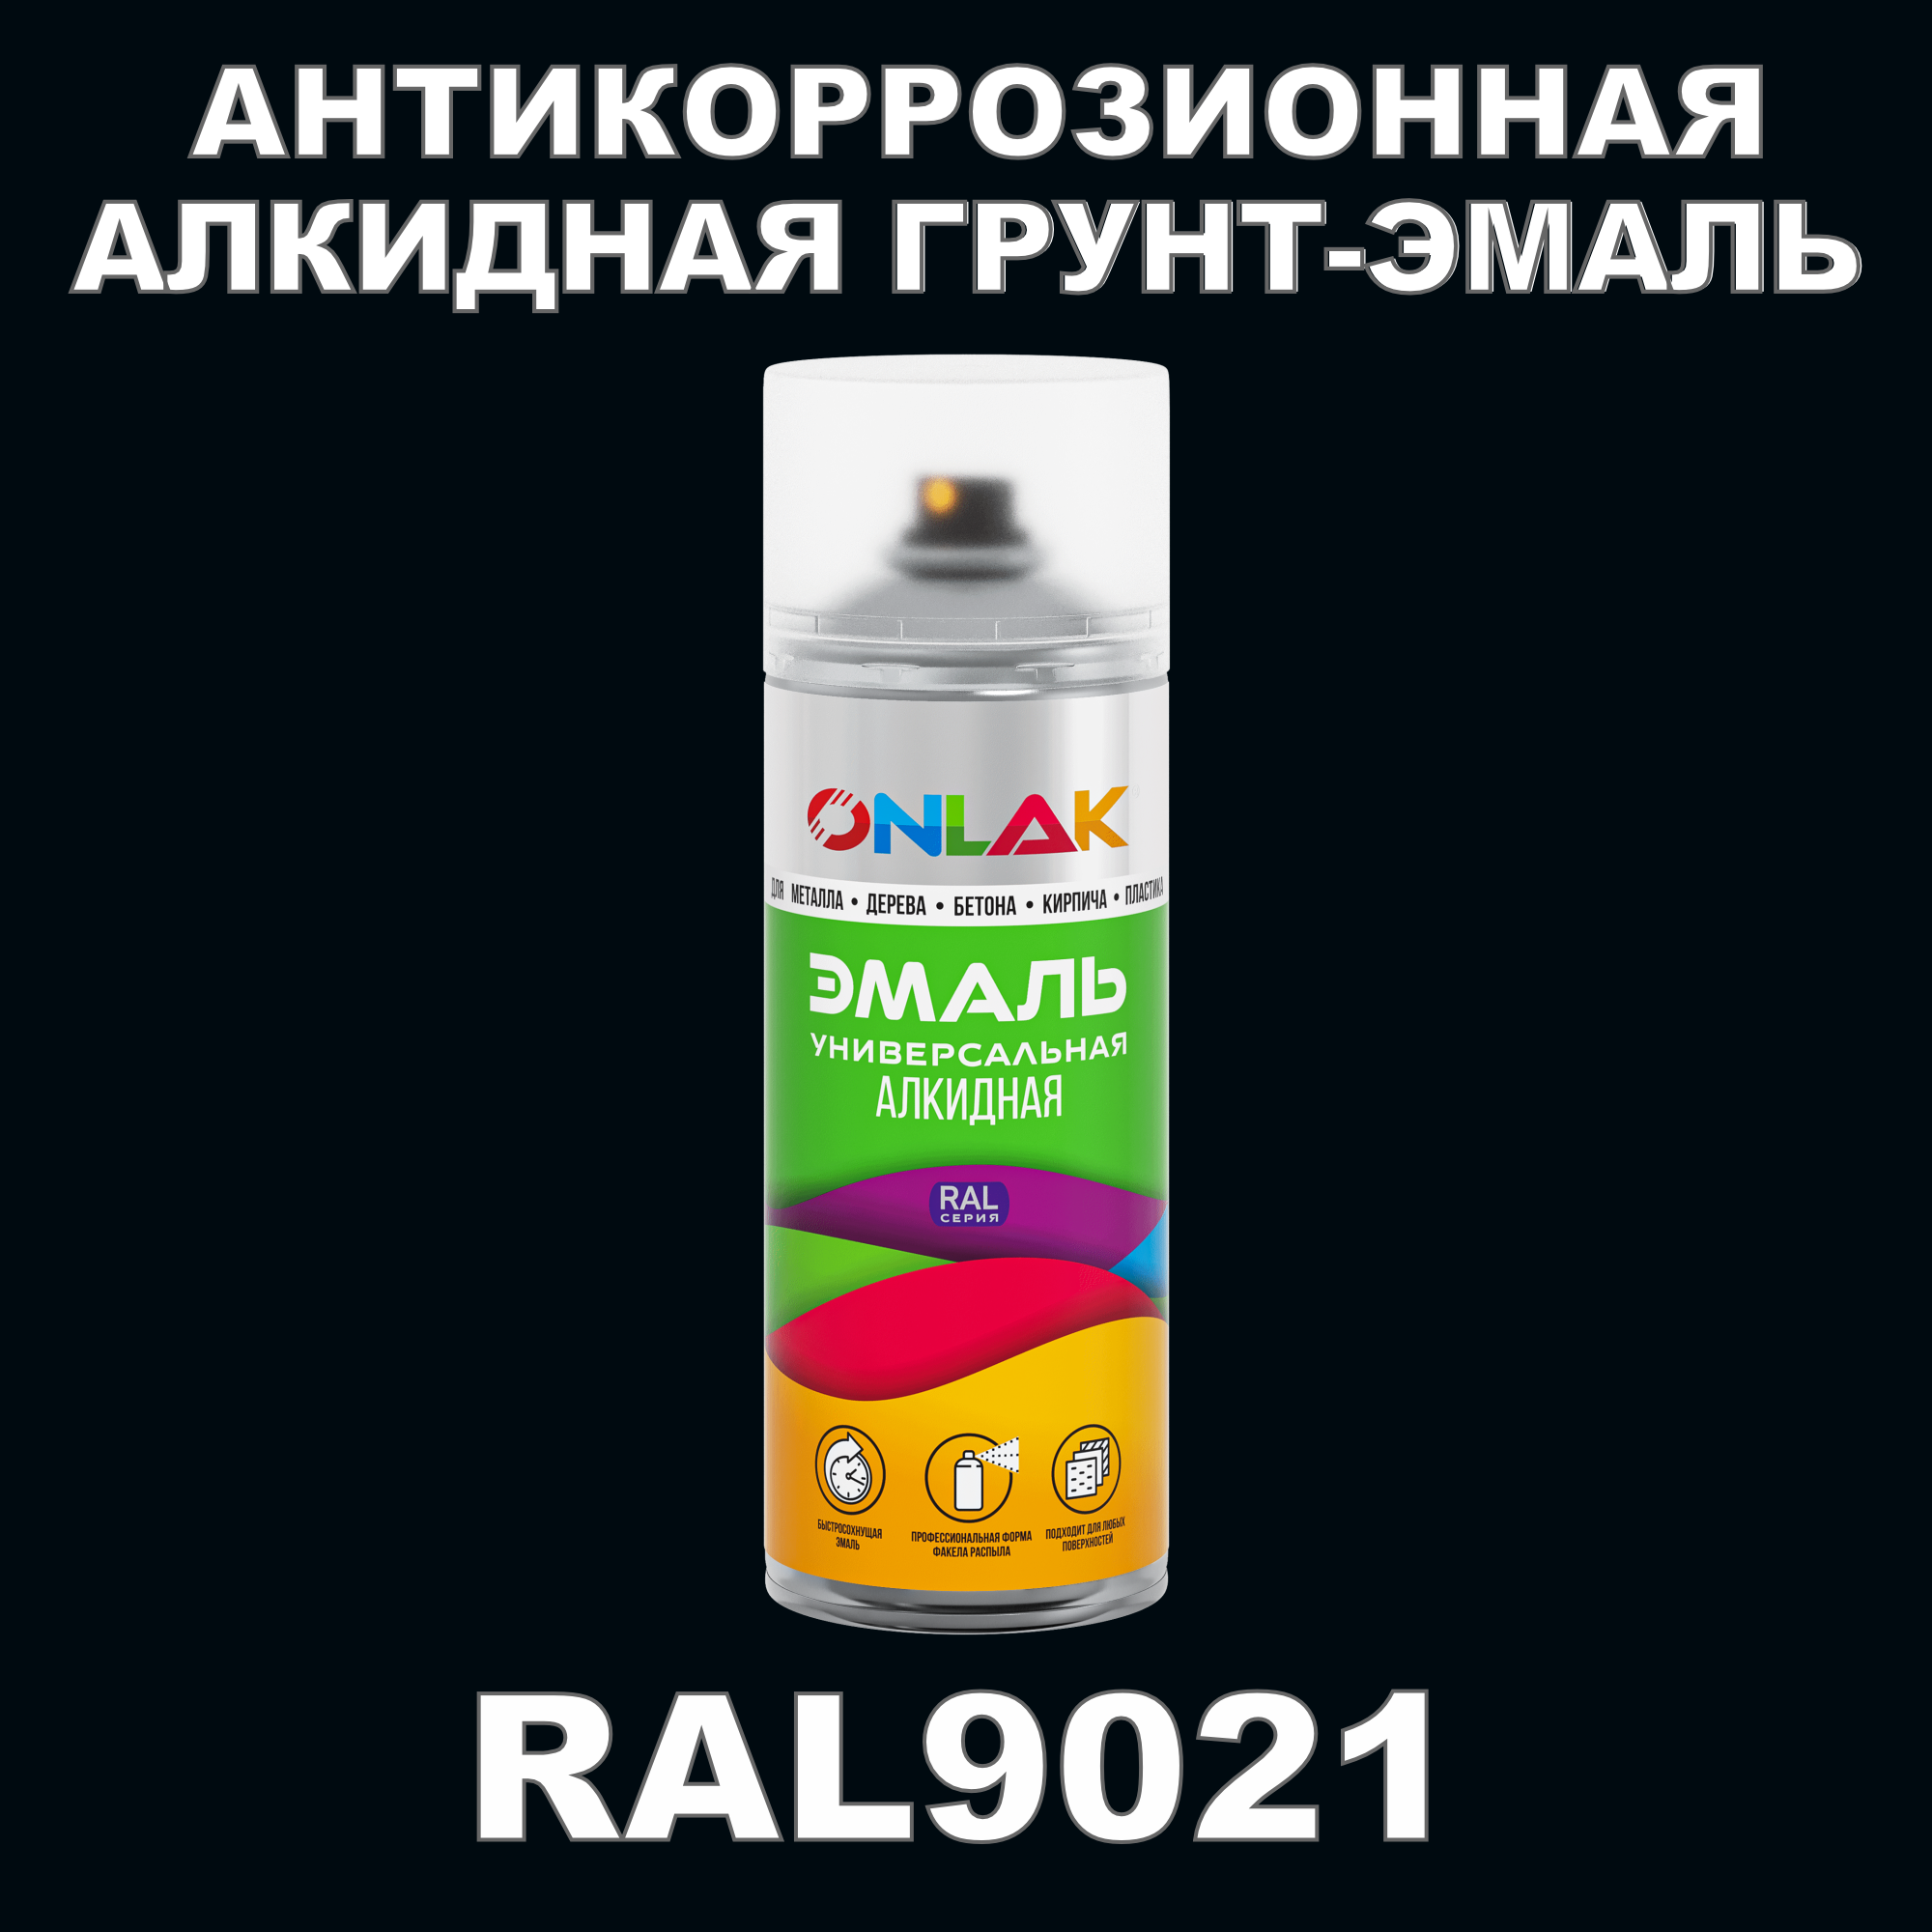 Антикоррозионная грунт-эмаль ONLAK RAL9021 полуматовая для металла и защиты от ржавчины антикоррозионная грунт эмаль onlak ral3004 полуматовая для металла и защиты от ржавчины